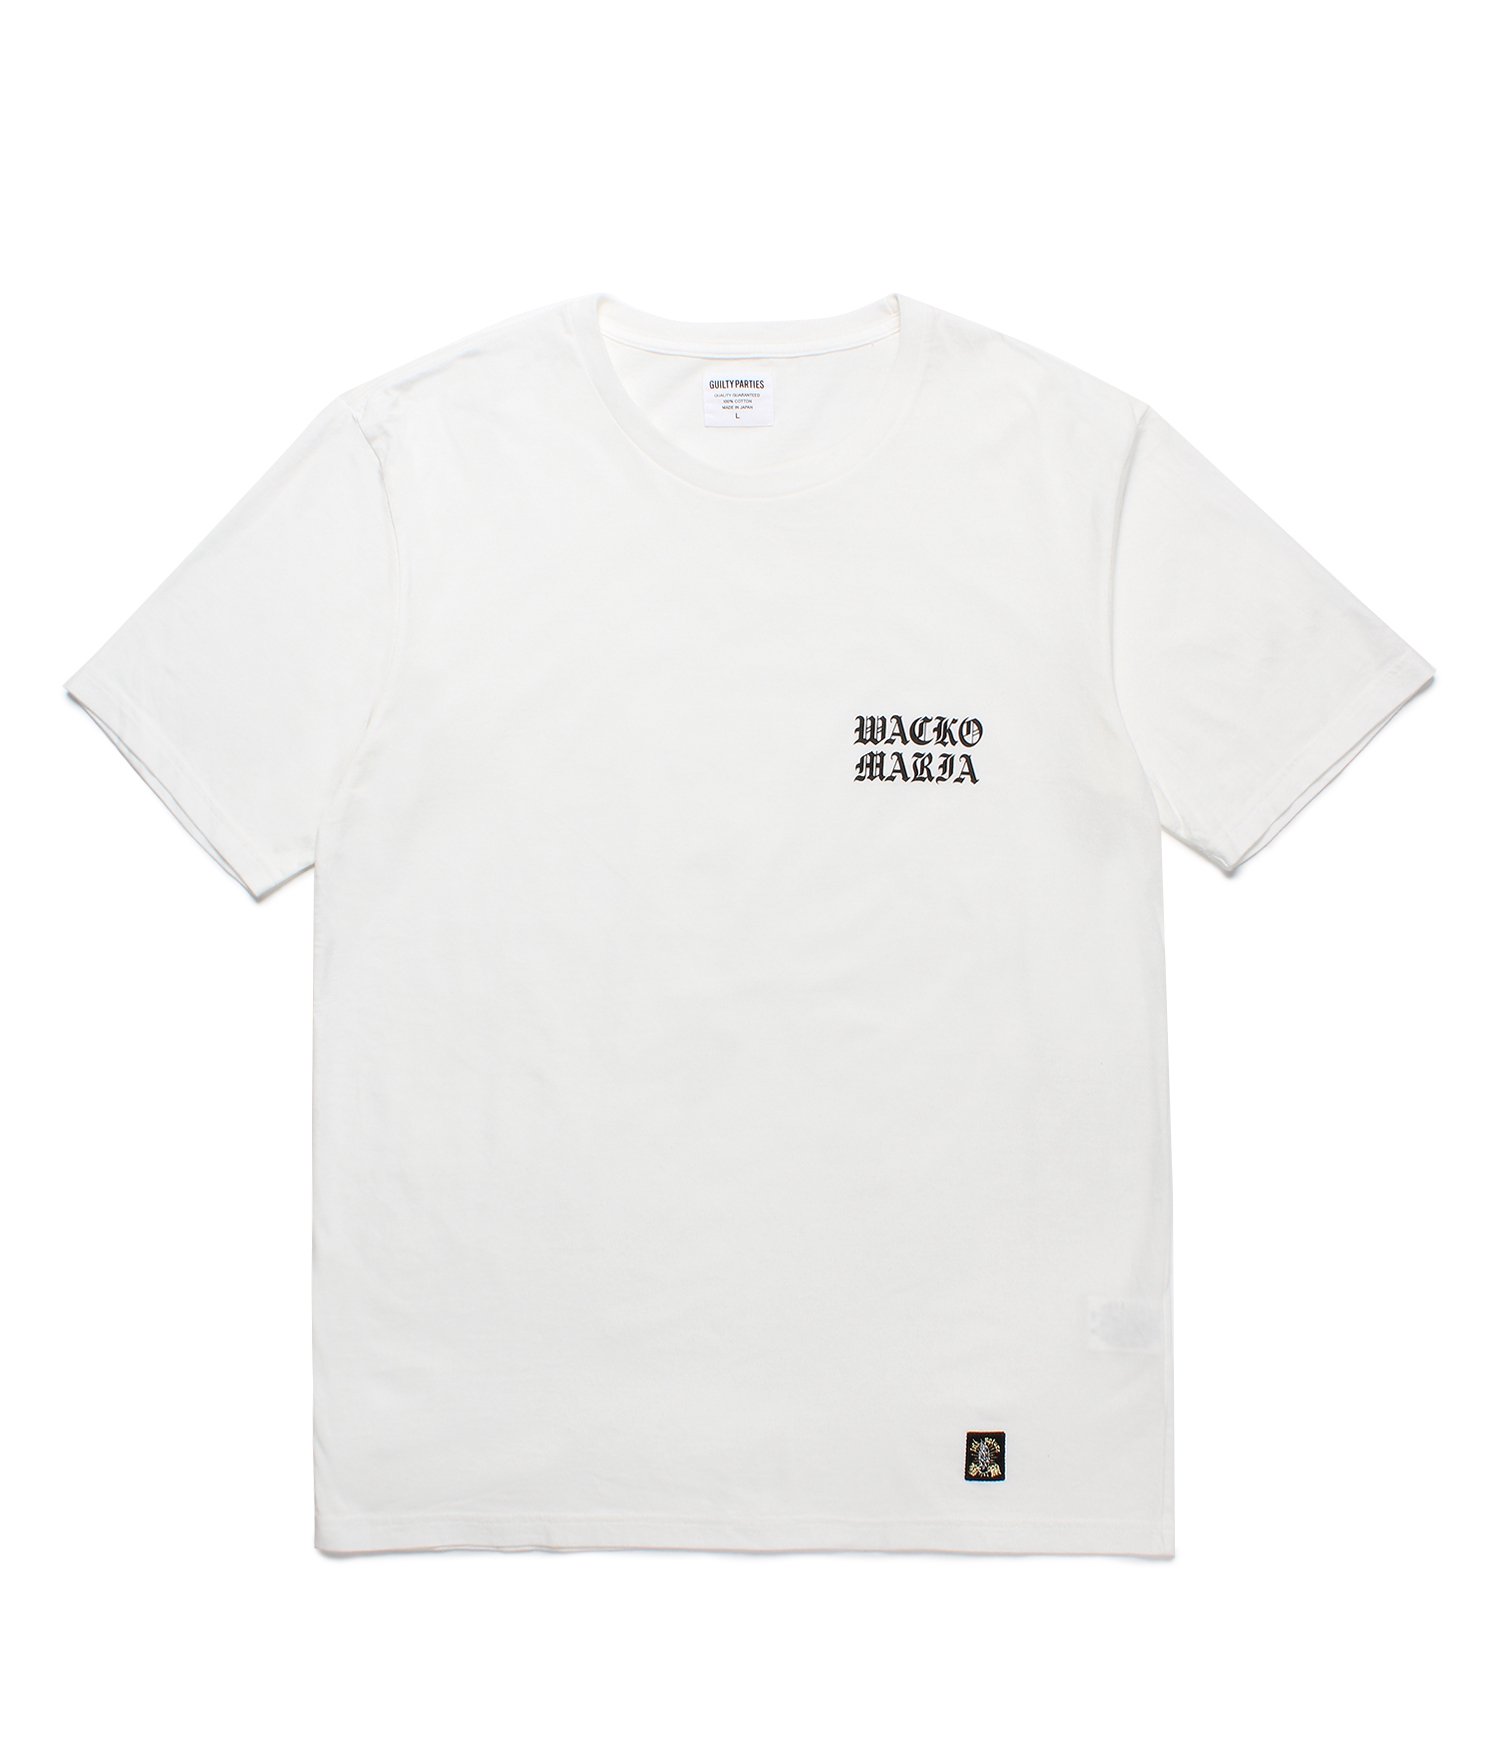 7,632円Wacko Maria ワコマリア crew neck t-shirt Lサイズ